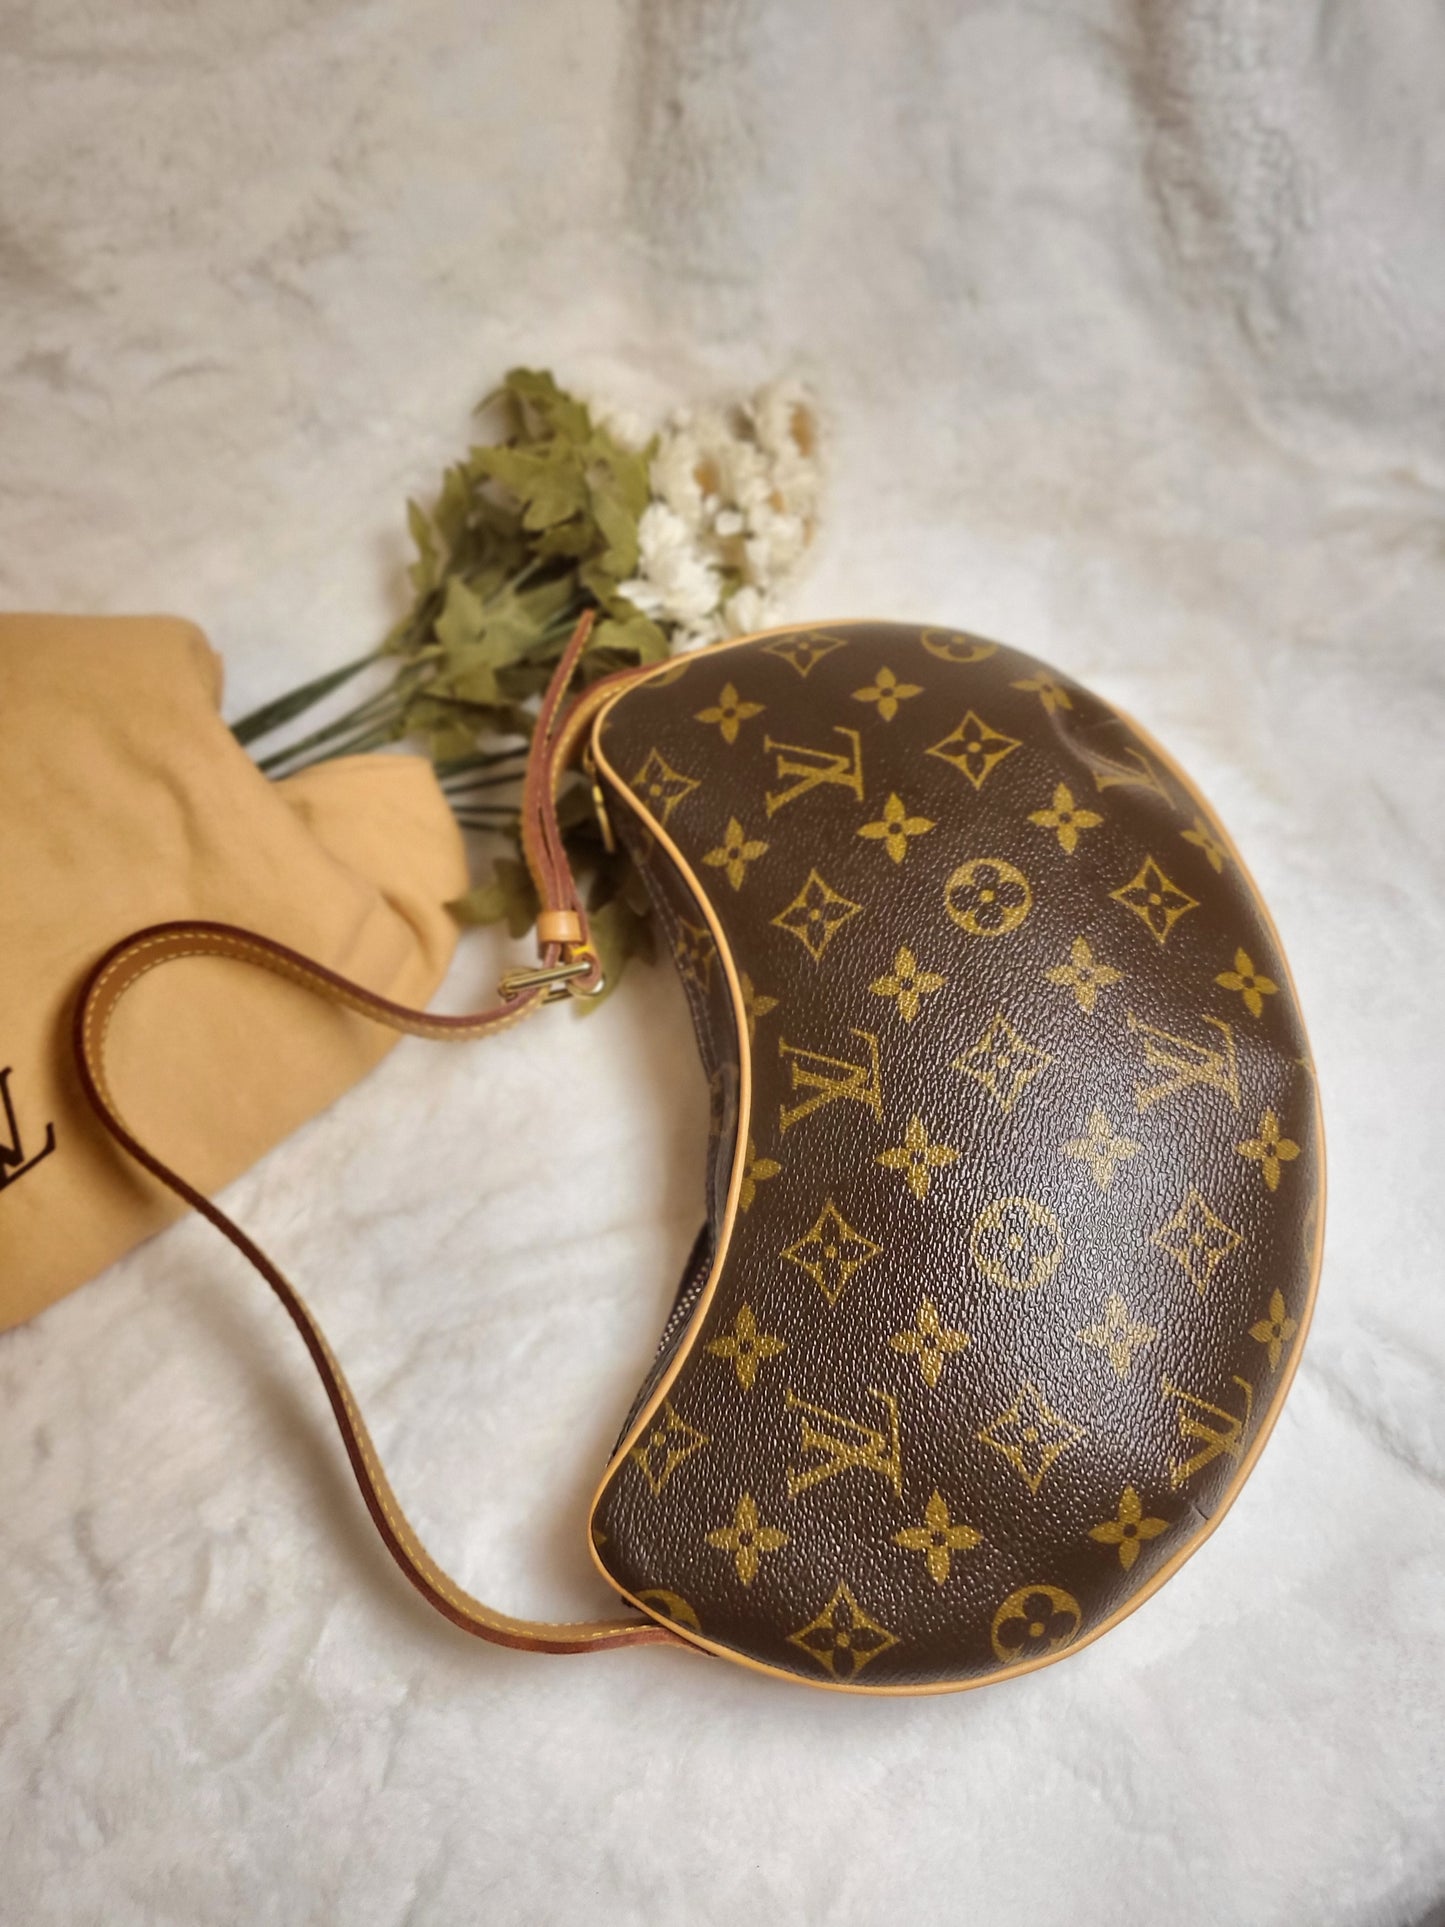 Authentic pre-owned Louis Vuitton Croissant pm shoulder bag